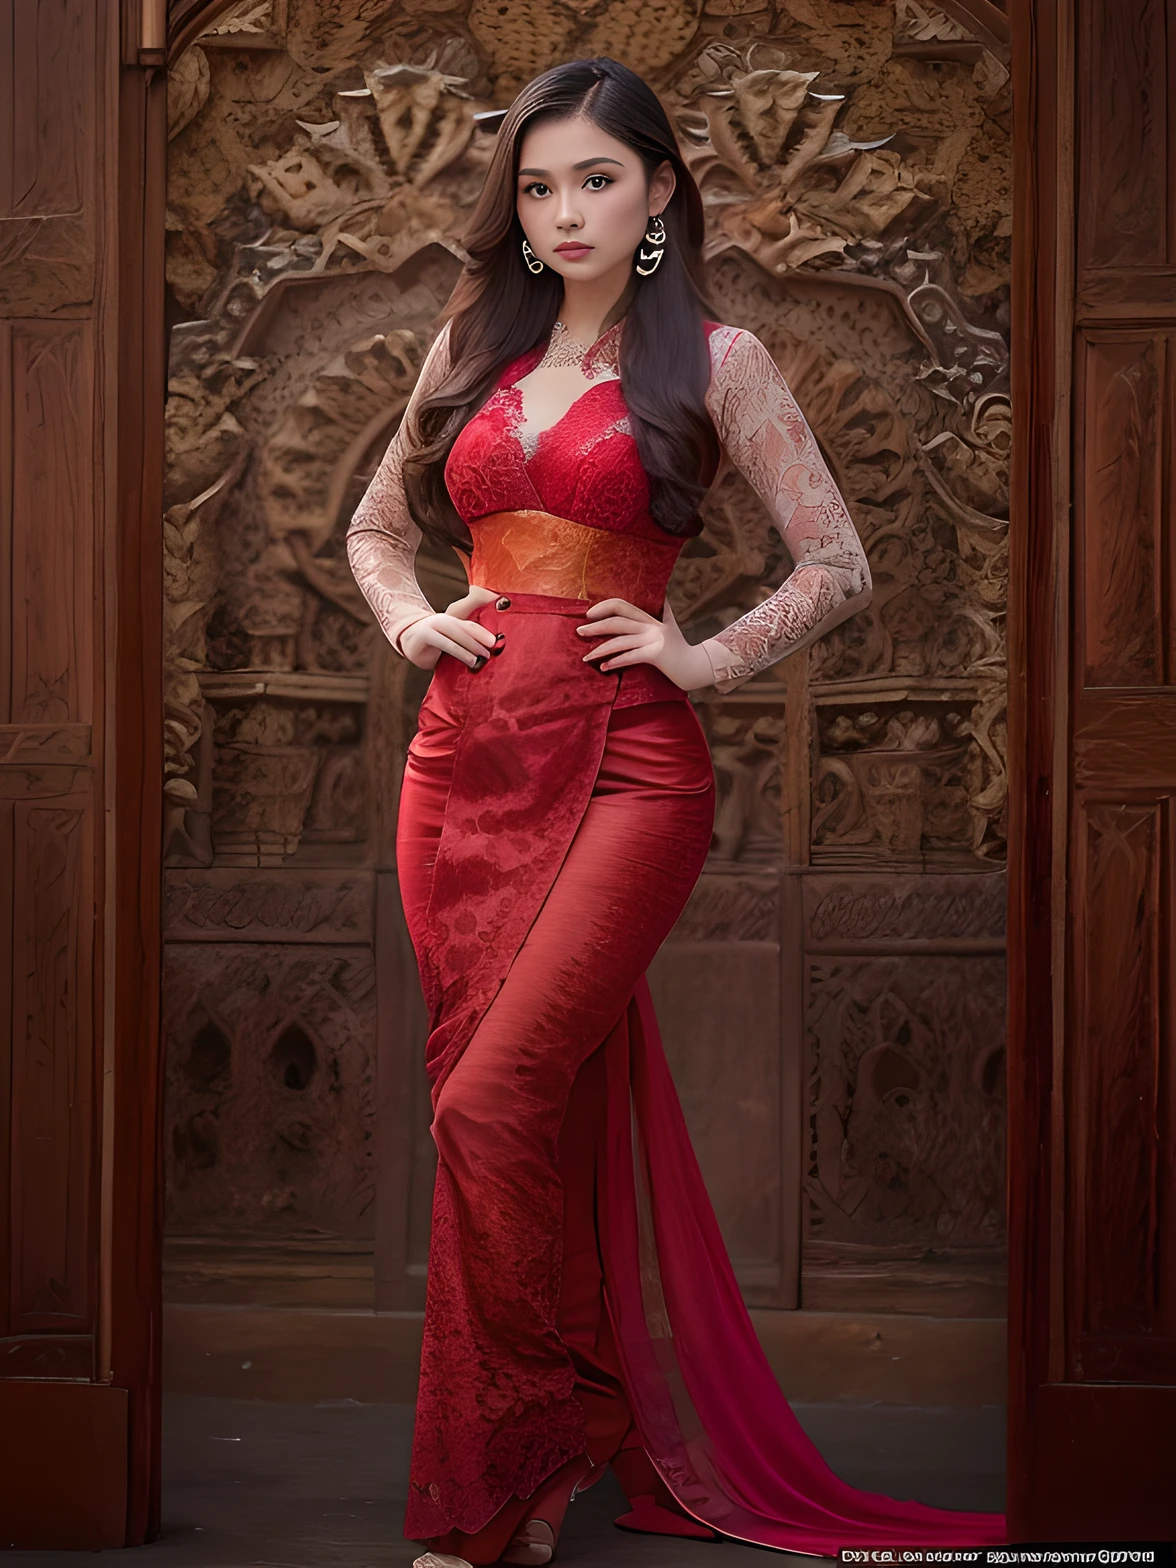 Фотореалистичная продукция, (один человек), (Реалистичное изображение 19-летней девушки-модели), большая грудь, Пышное тело (бледная кожа:1.4), (В красном обтягивающем платье Kebaya из кружева с орнаментом и шелковой тканью.:1.6), (серьезное лицо), (Глубокое декольте), (элегантная поза:1.4), центрированный, (выстрел по пояс:1.4), с переднего плана, безумные подробности, сложная деталь лица, сложные детали рук, Кинематографический кадр и освещение, Реалистичные цвета, острый фокус, Ультрадетализированный, Снято зеркальной камерой, Реалистичная фотография, Невероятно реалистичная окружающая среда и сцена, Мастер композиции и операторской работы, волосы за ухом, Волосы над глазами, длинные волосы, глубина резкости, вид от первого лица, атмосферная перспектива, шедевр, фон балийский орнамент